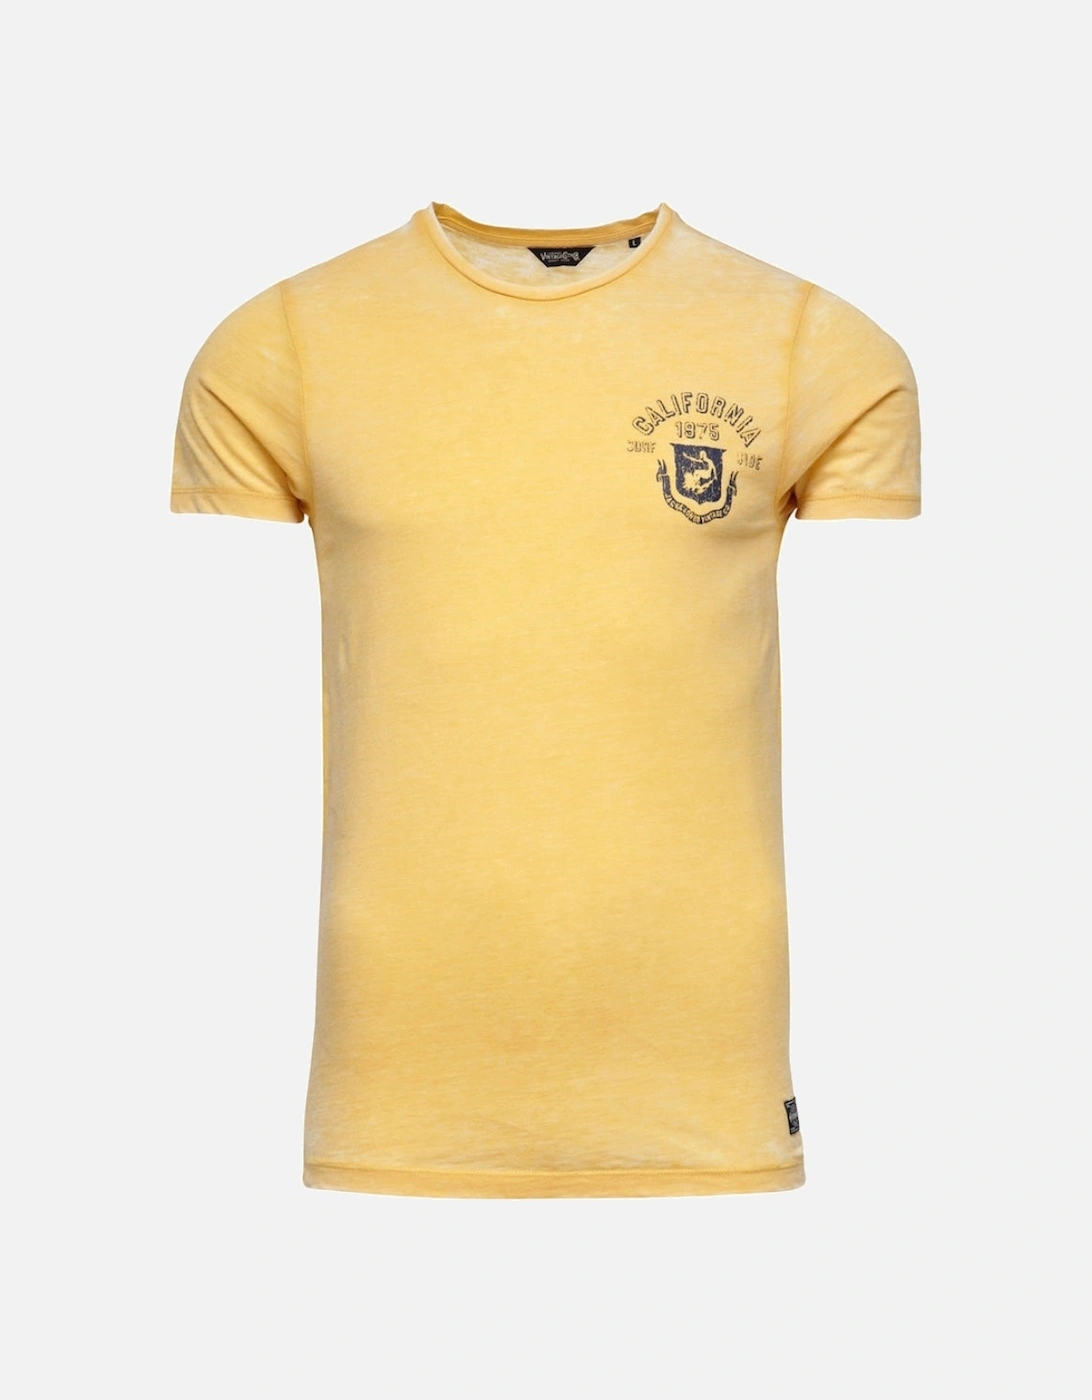 Jack and Jones Burn Tee O-Neck Yellow T-Shirt, 3 of 2